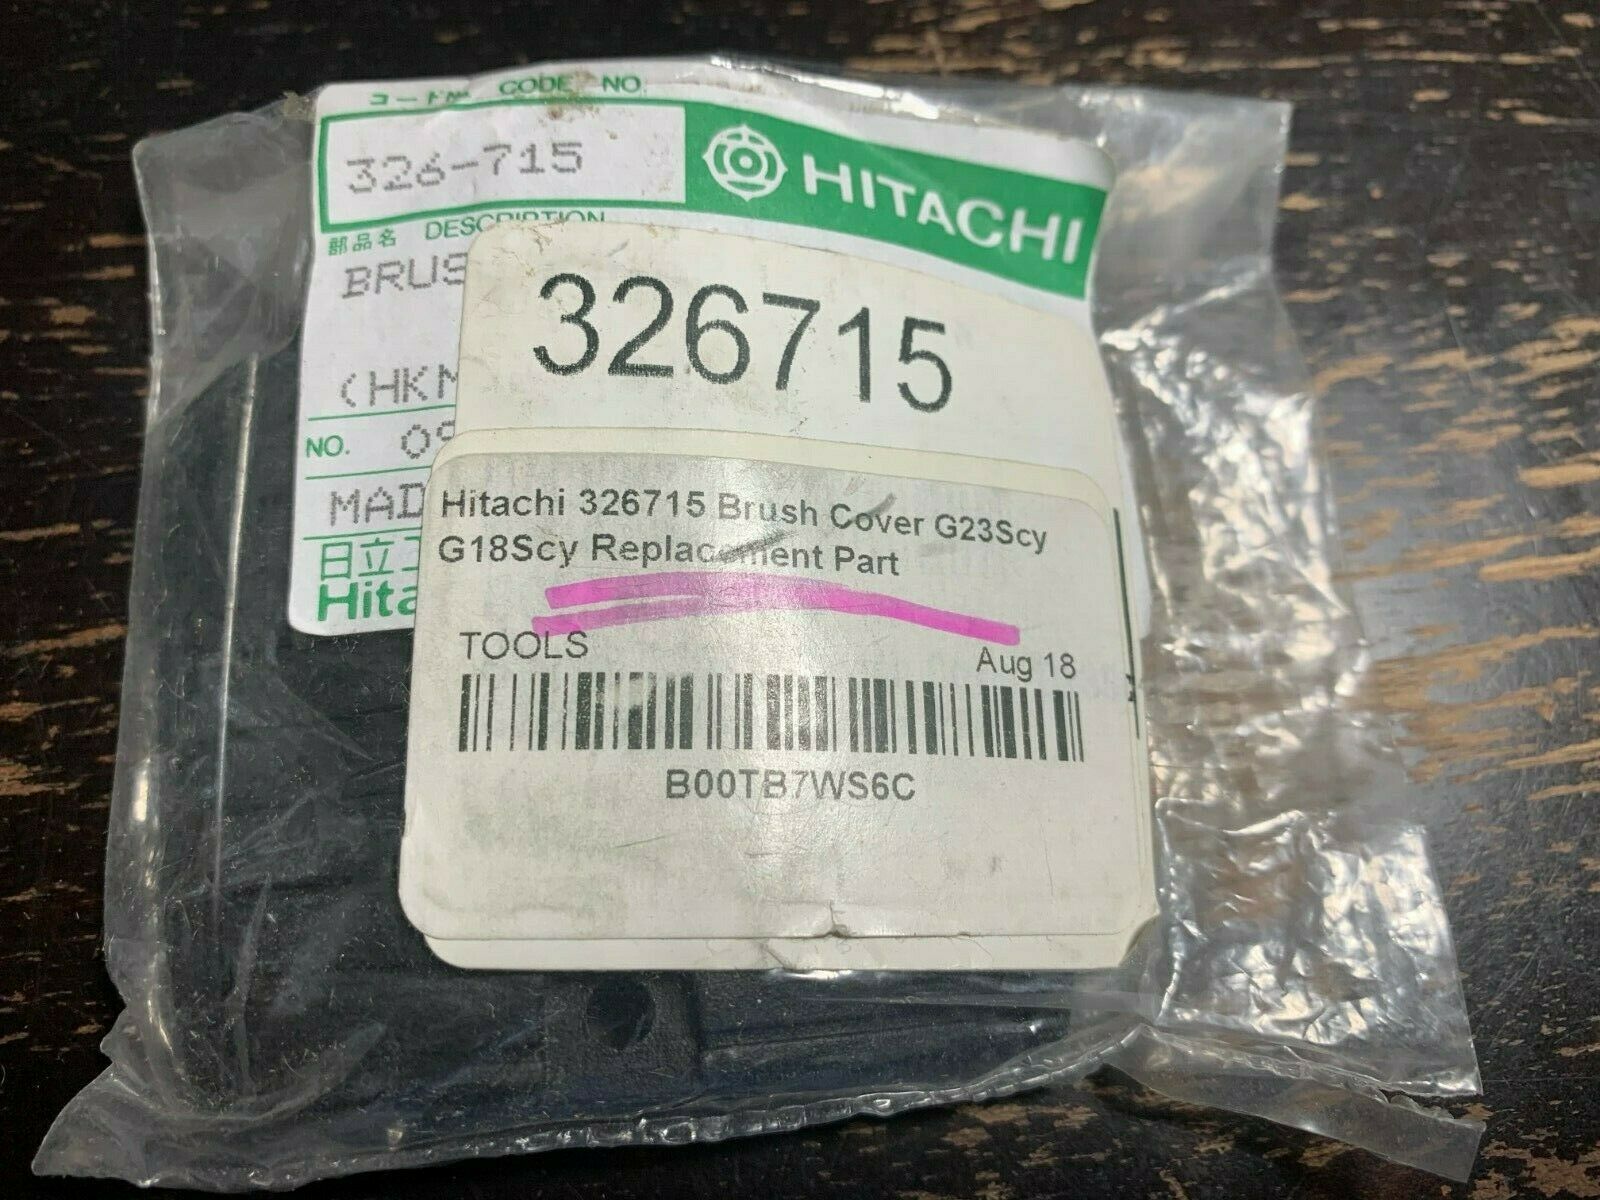 Hitachi 326715 Brush Cover g23scy g18scy Replacement Part - $3.99